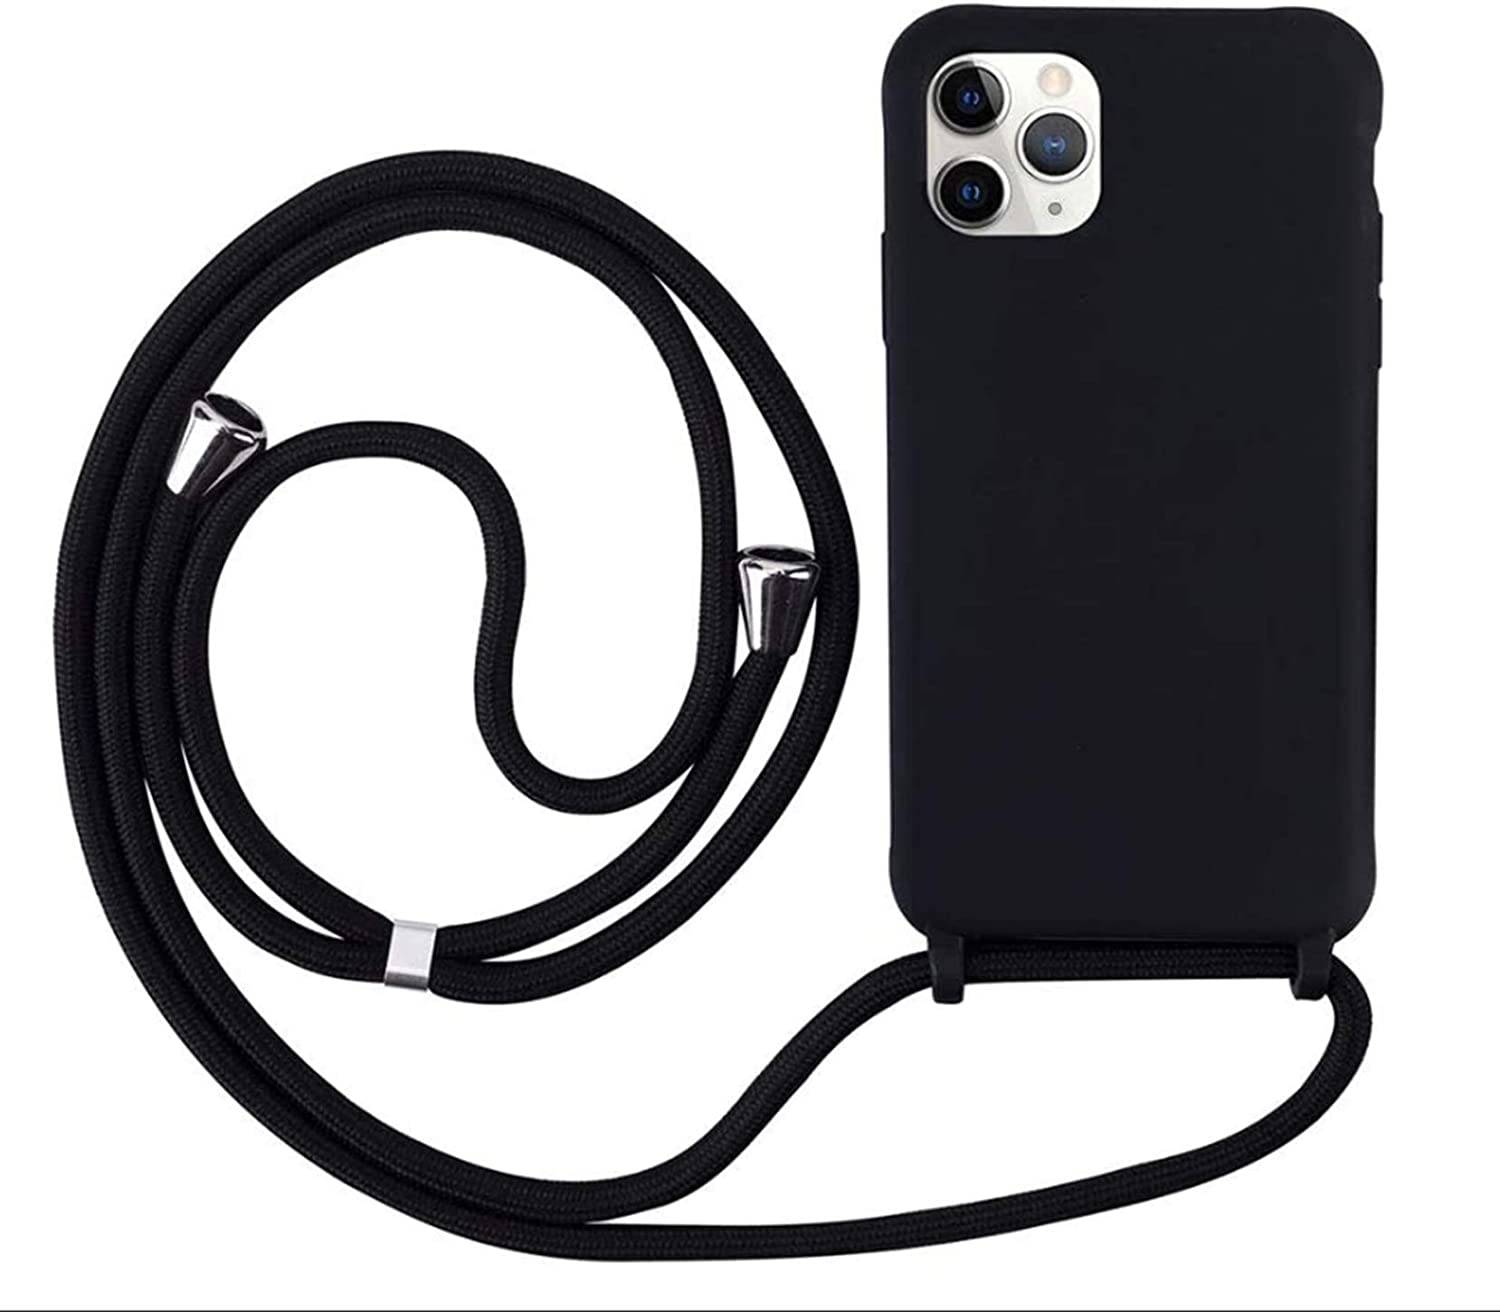 Coque avec cordon pour iPhone 11 Pro Max - Protection en Silicone Case - Coque tour de cou, bandoulière iPhone - Coques&Co